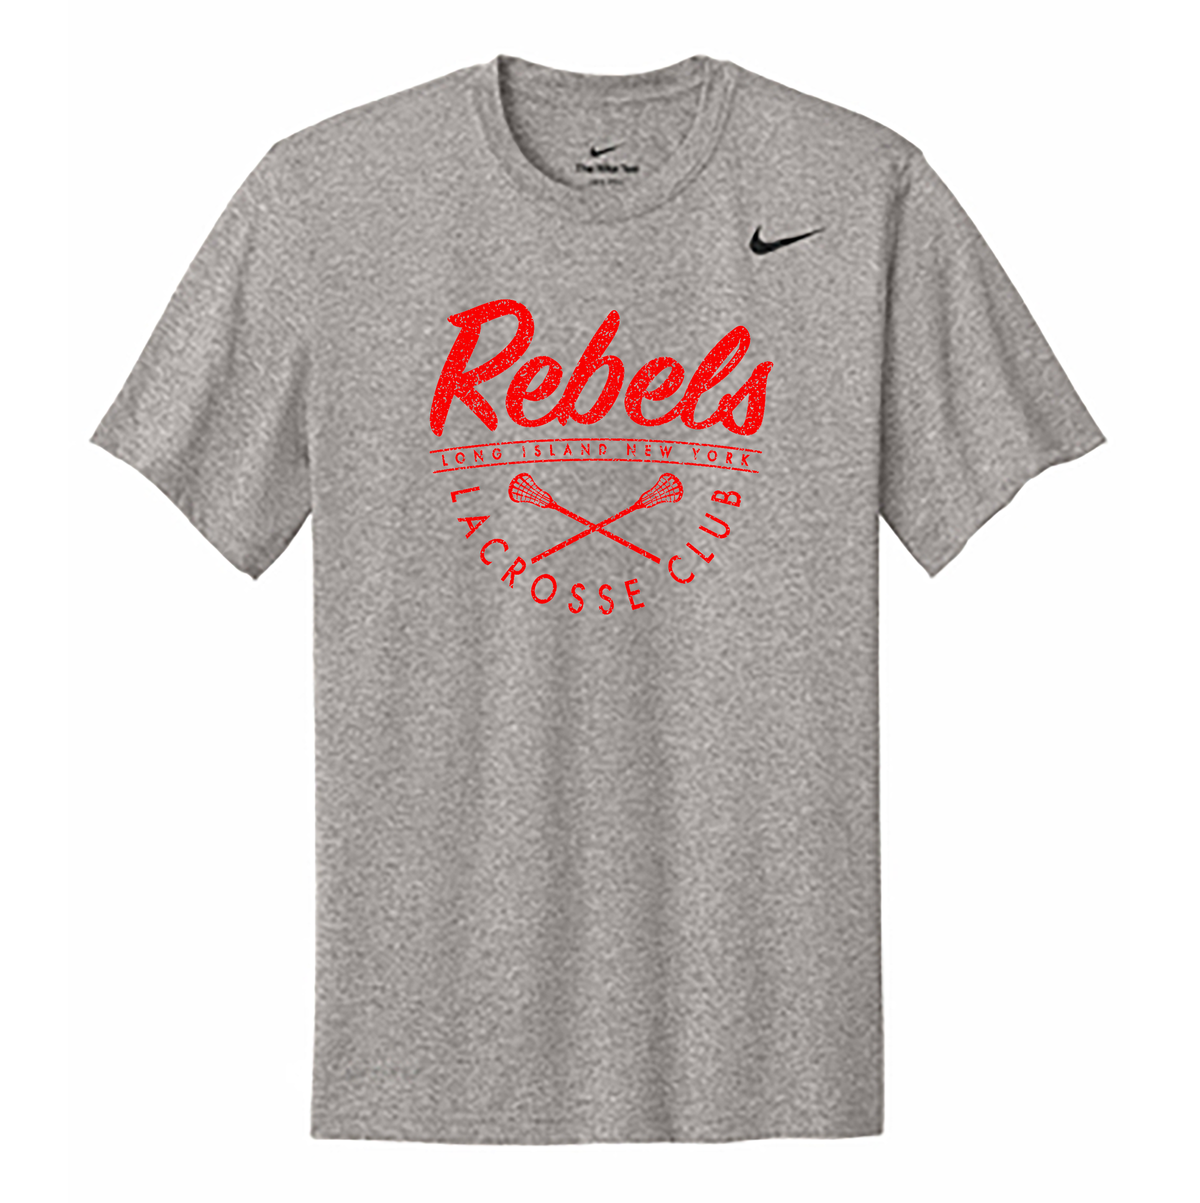 Rebels Lacrosse Nike rLegend Tee